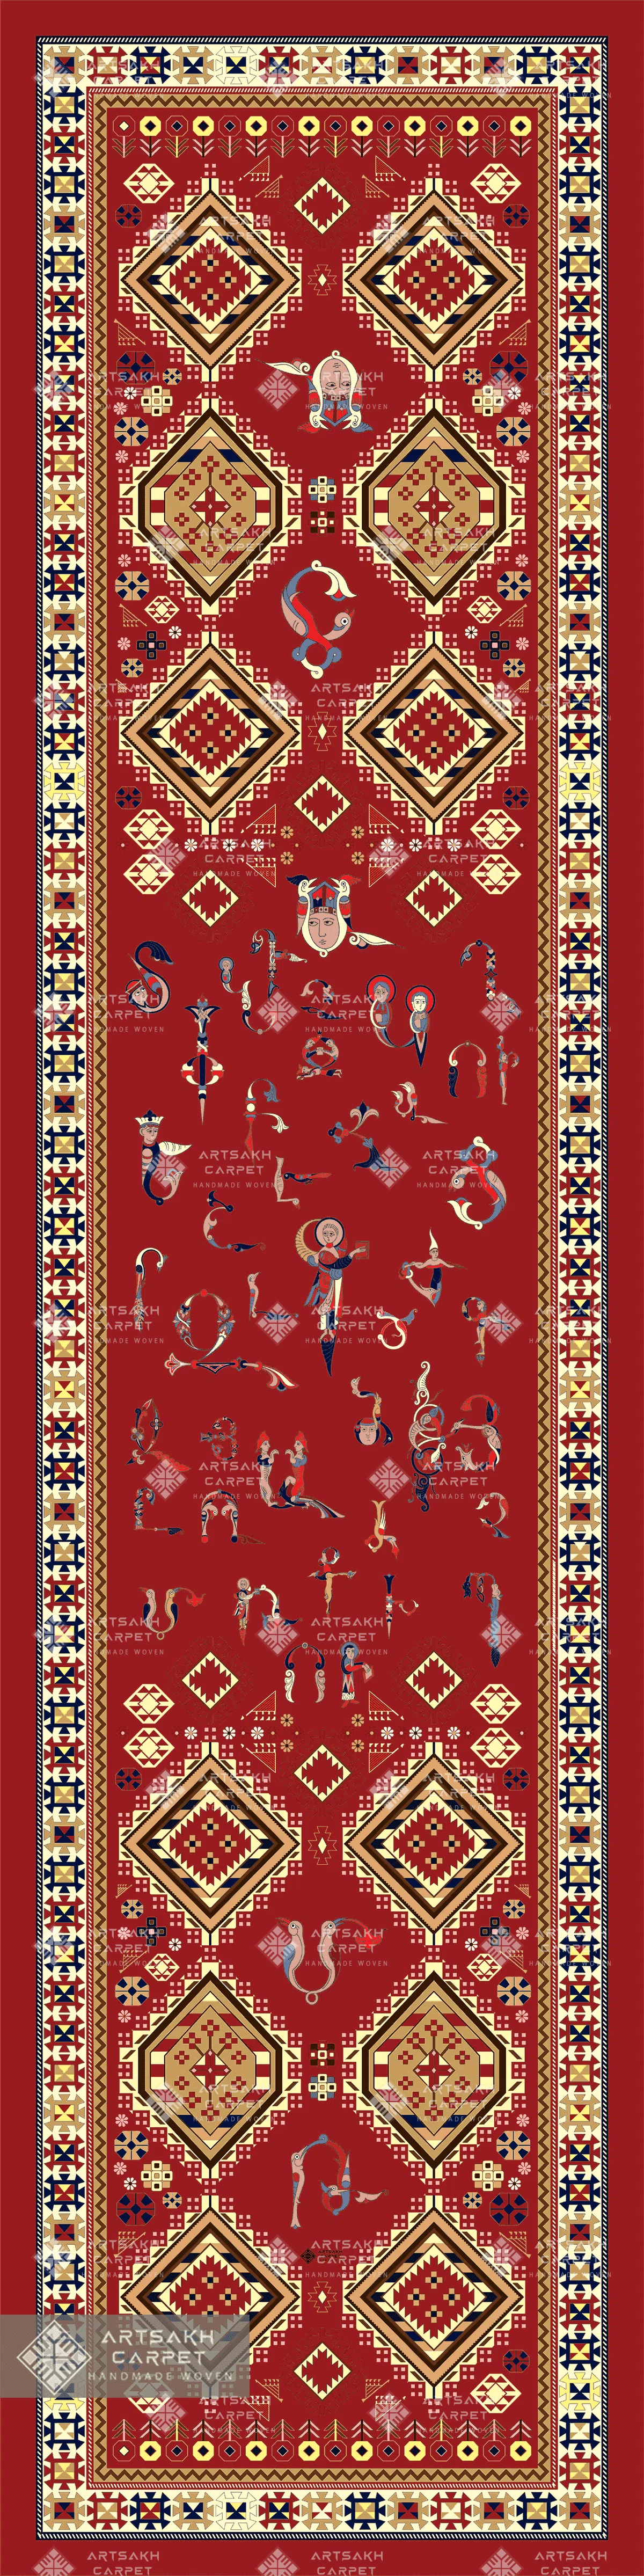 Шелковый шарф с армянскими орнаментами